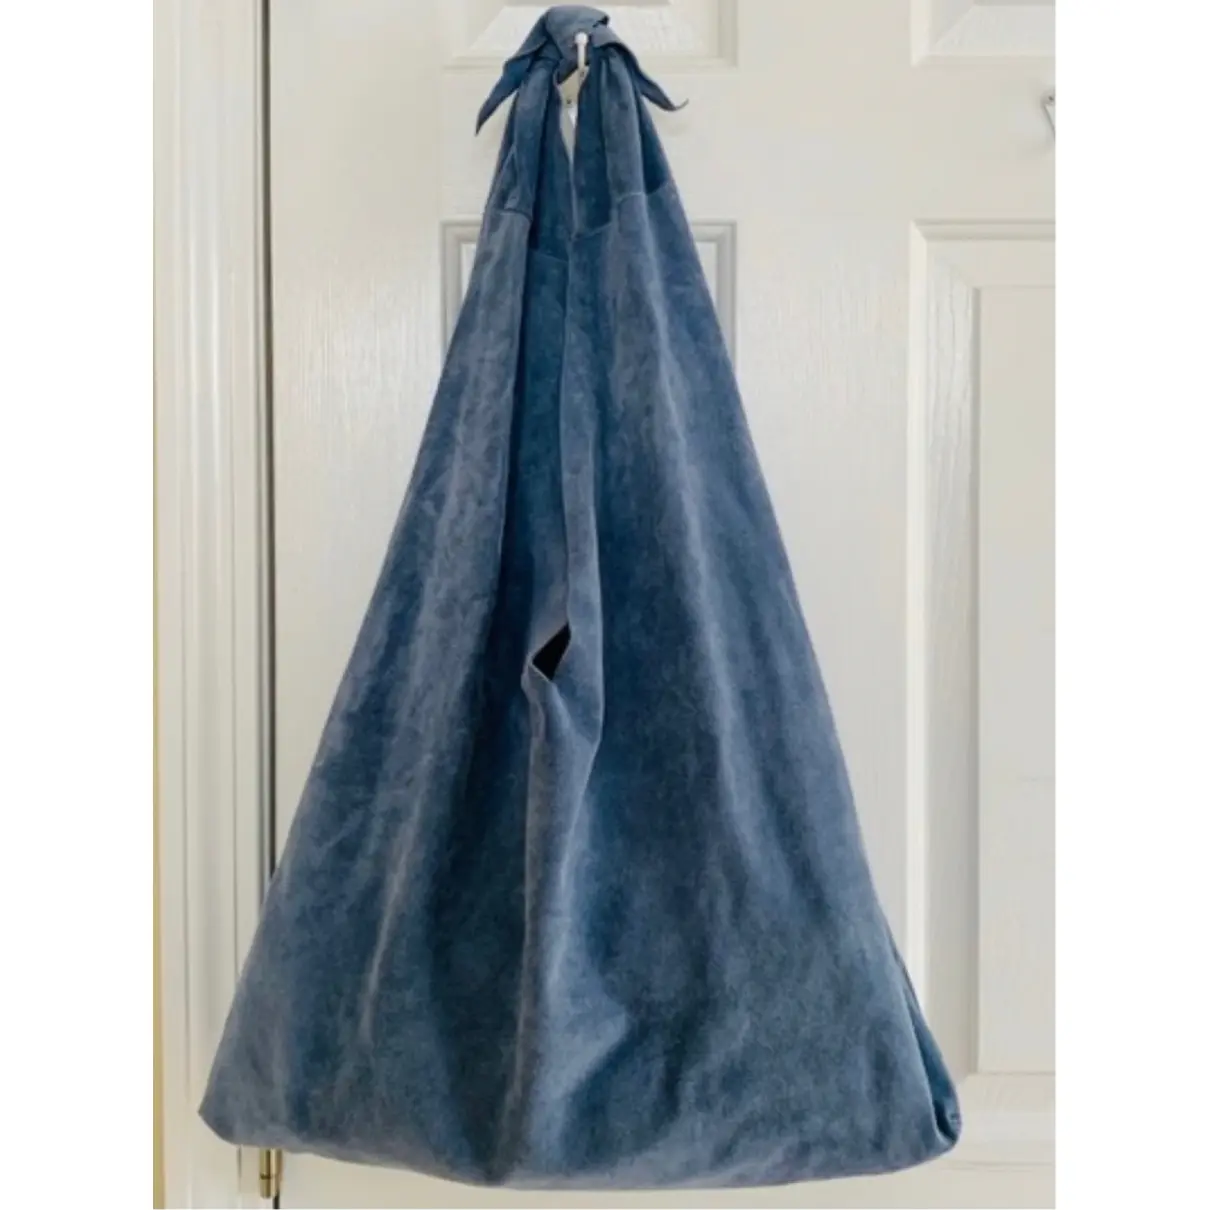 Buy The Row Bindle handbag online